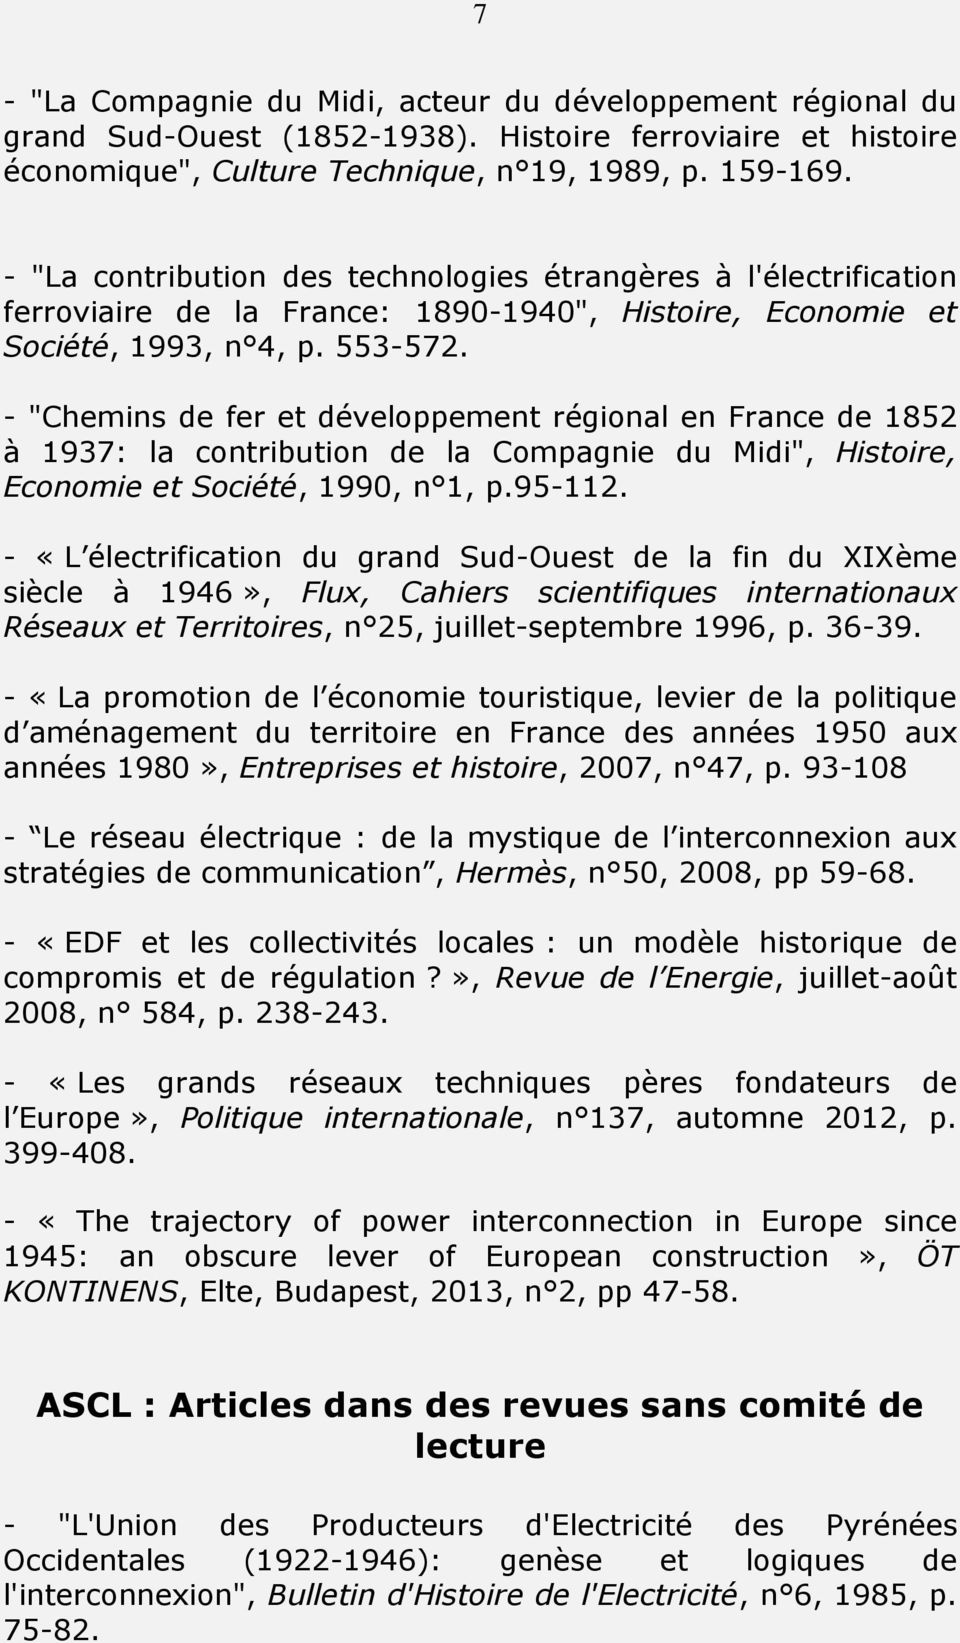 - "Chemins de fer et développement régional en France de 1852 à 1937: la contribution de la Compagnie du Midi", Histoire, Economie et Société, 1990, n 1, p.95-112.